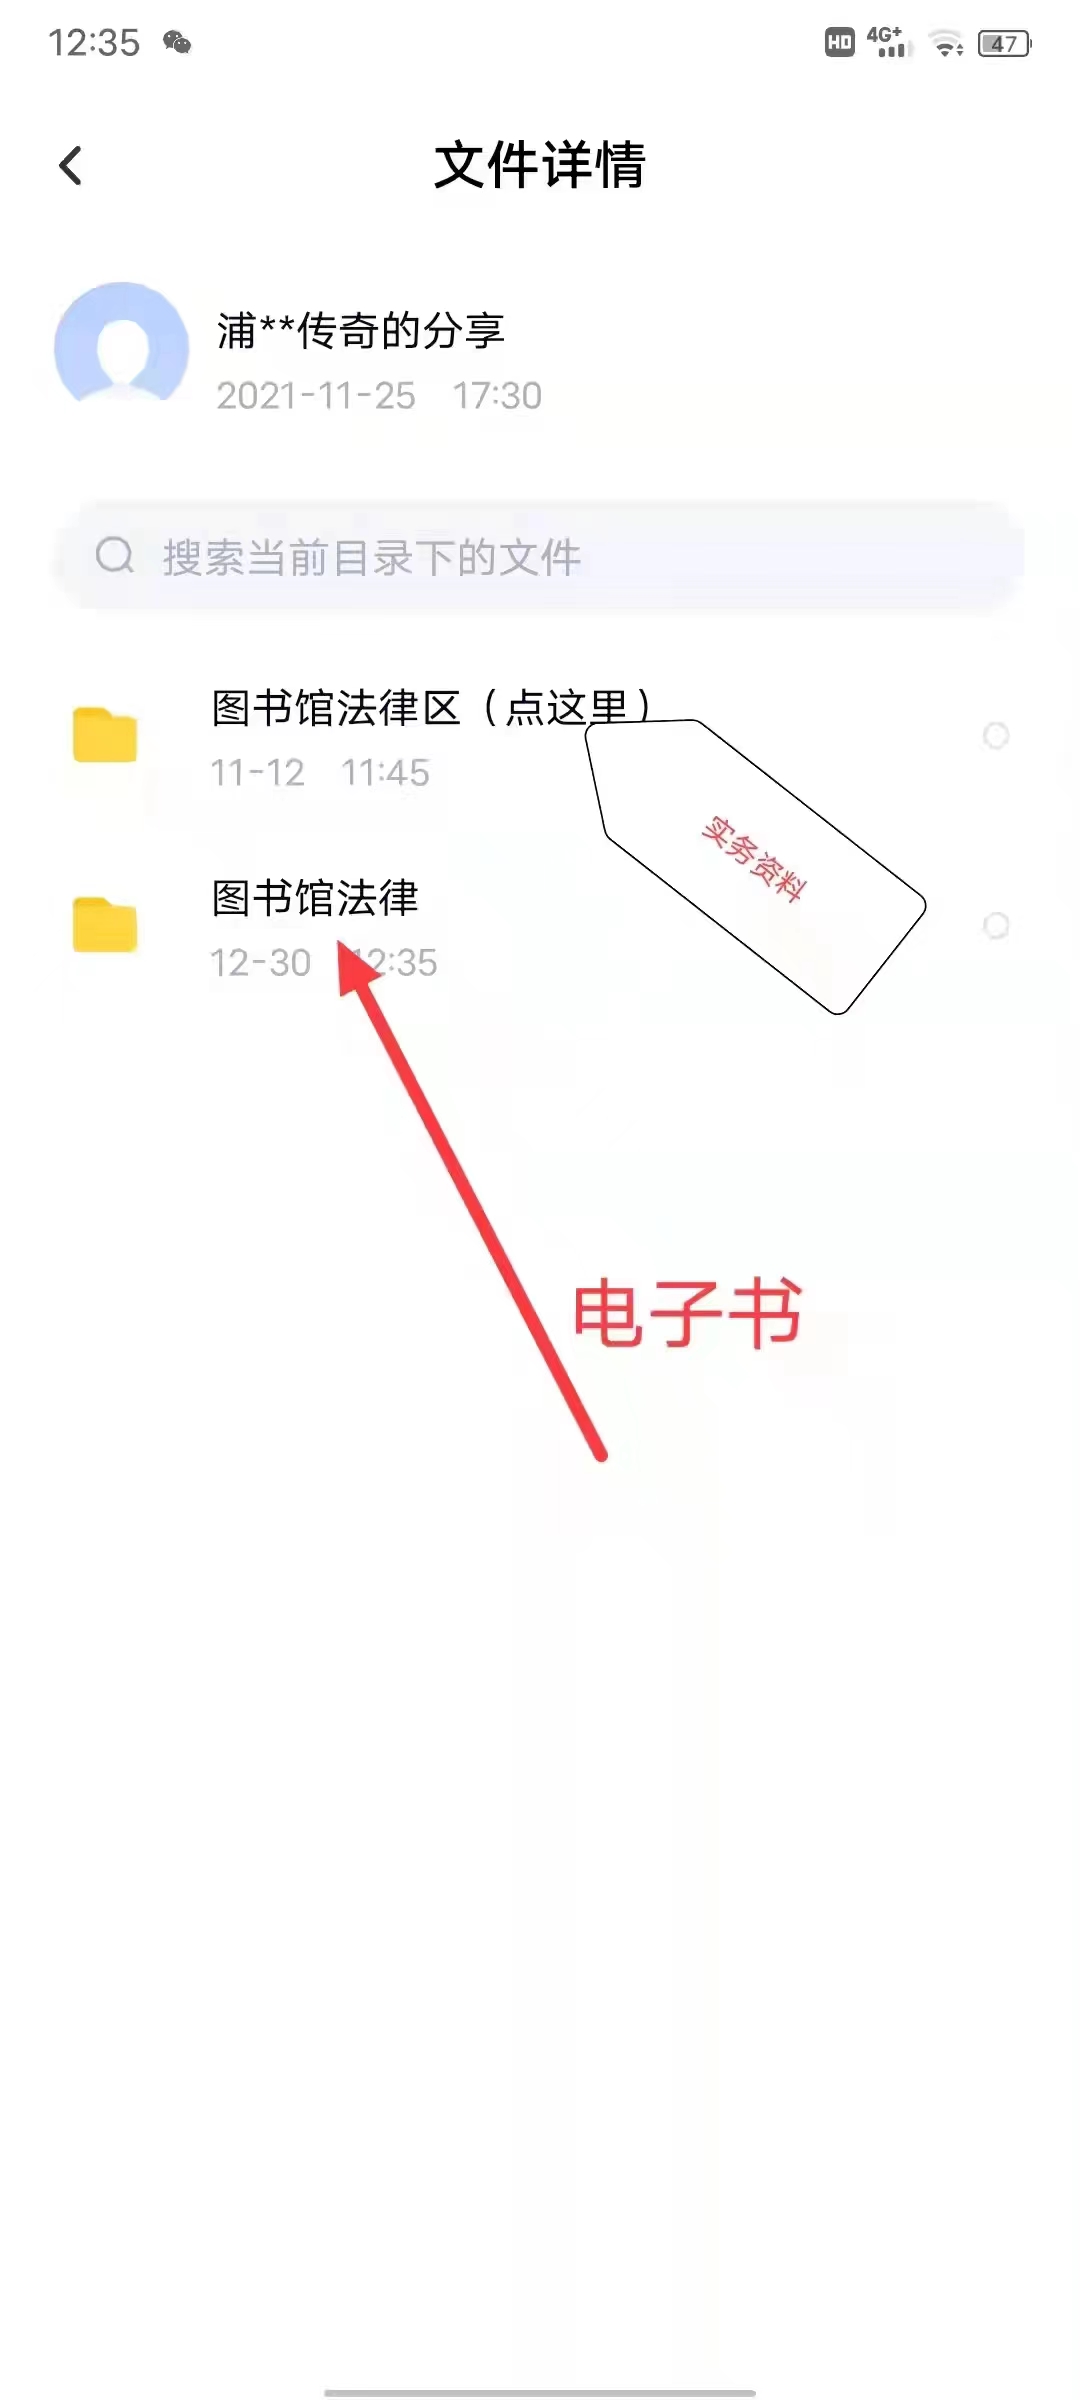 【法律】【PDF】049 中华人民共和国民法典继承编条文释义与疑难适用 202206 肖峰 刘耀东